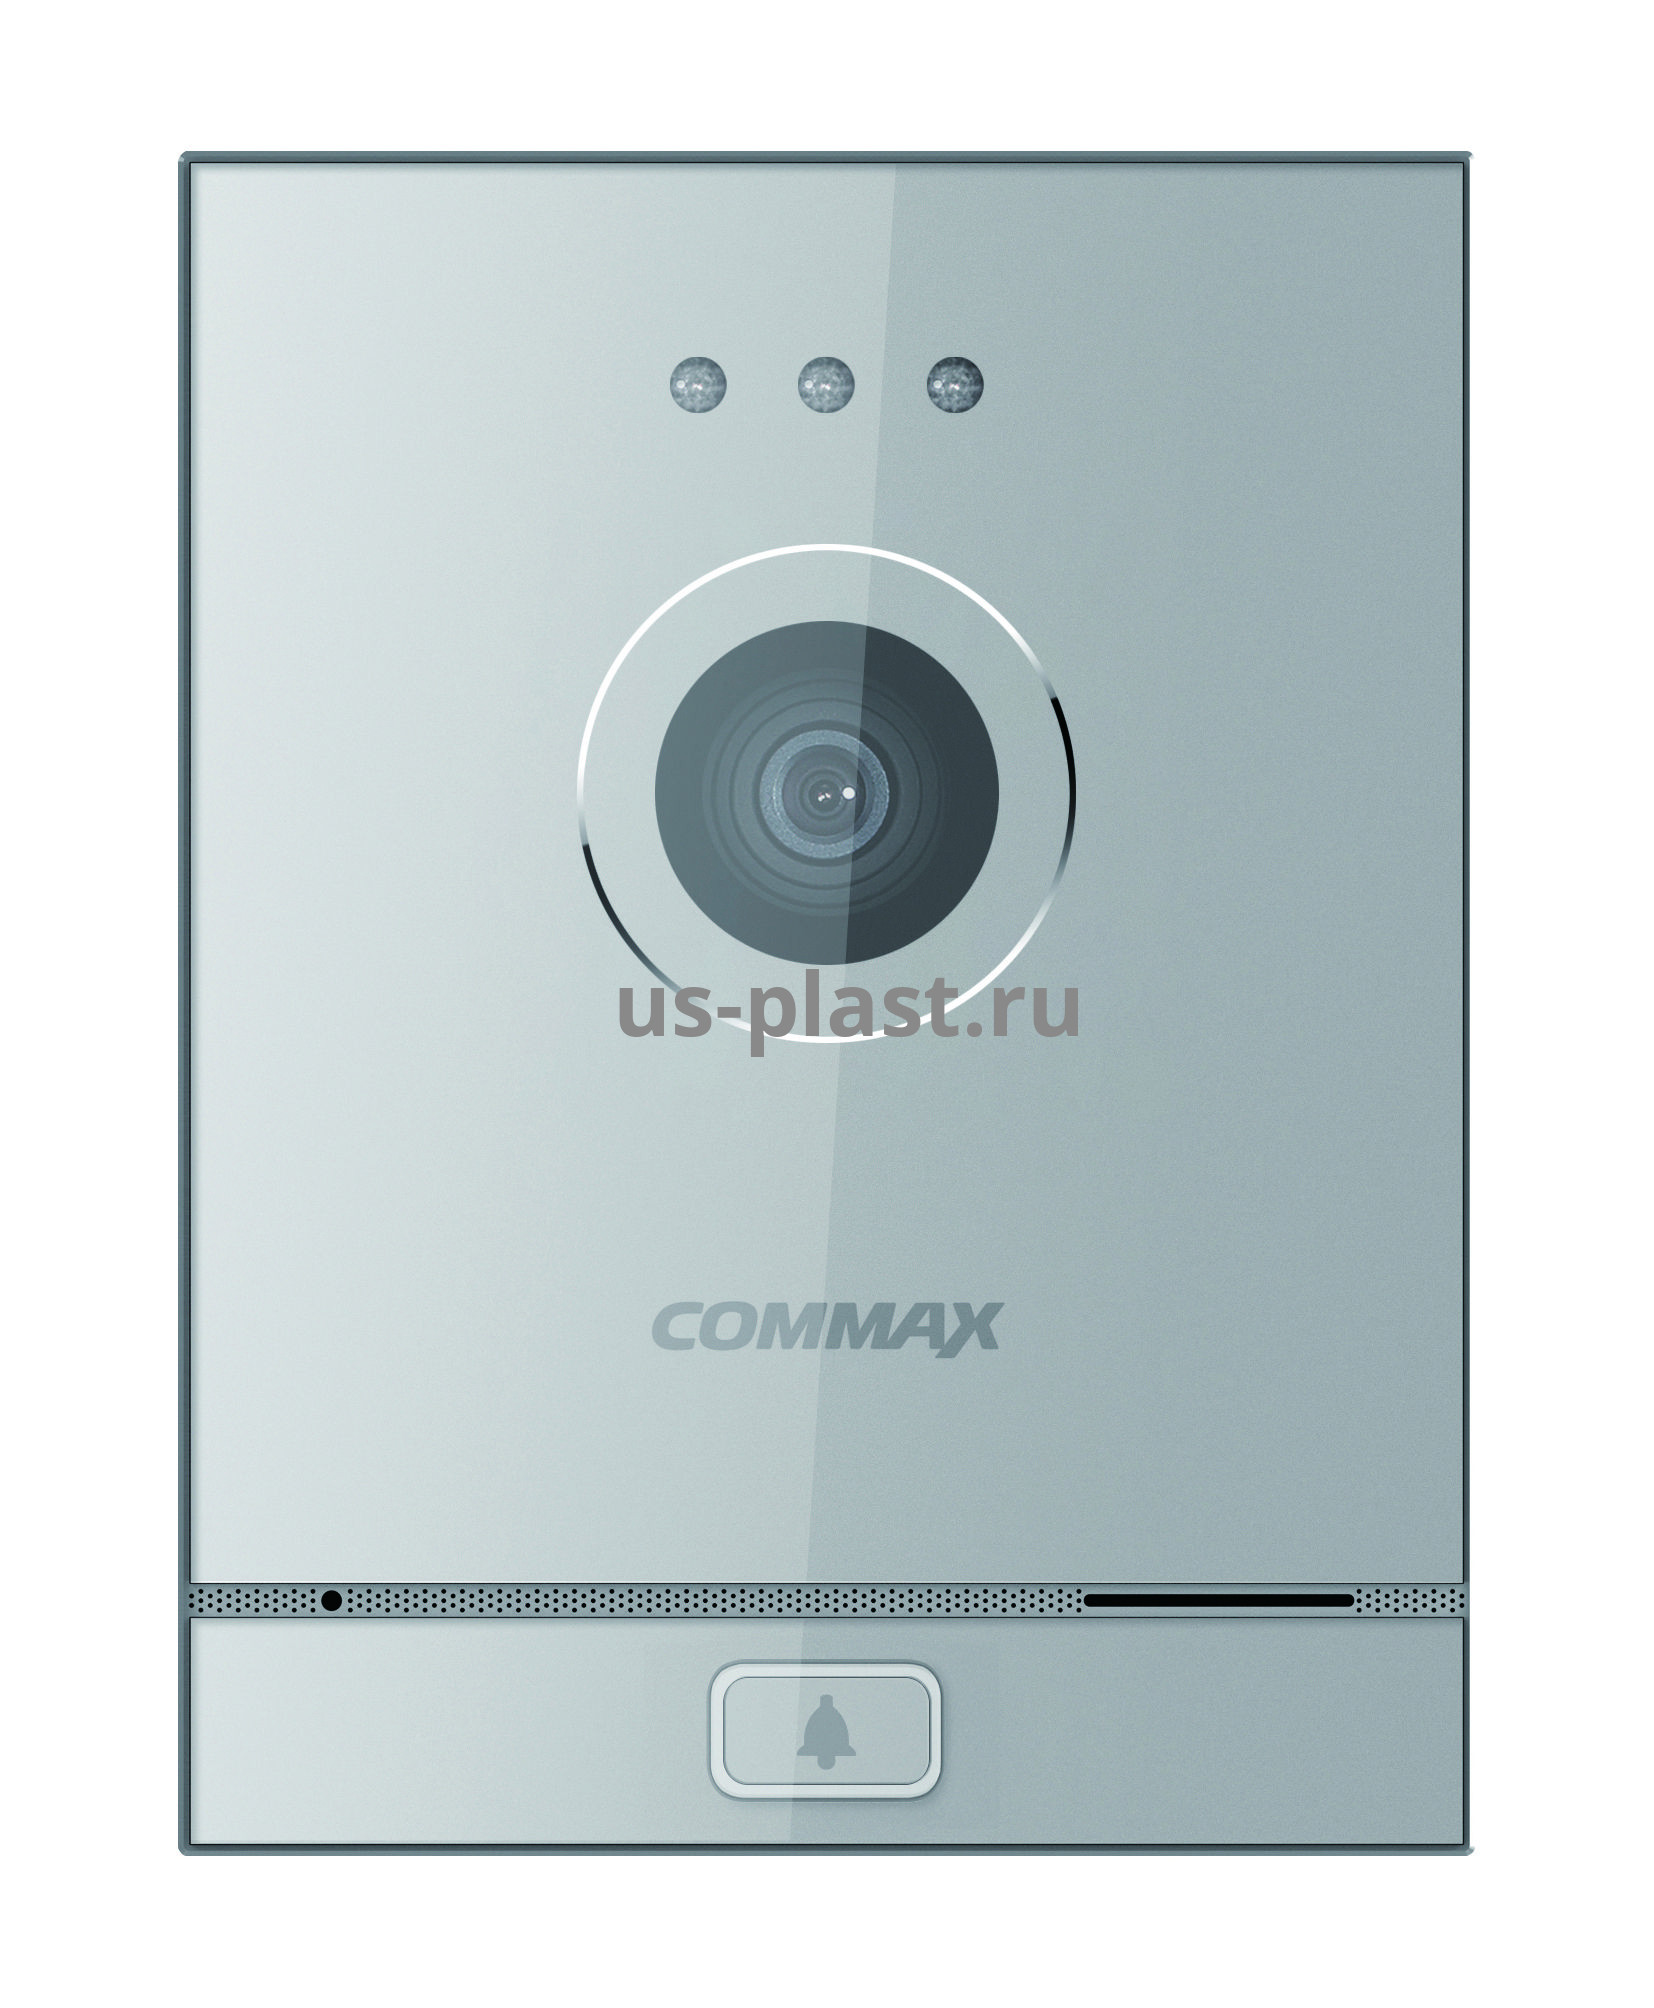 Commax CIOT-D21M (A) одноабонентская вызывная панель IP видеодомофона